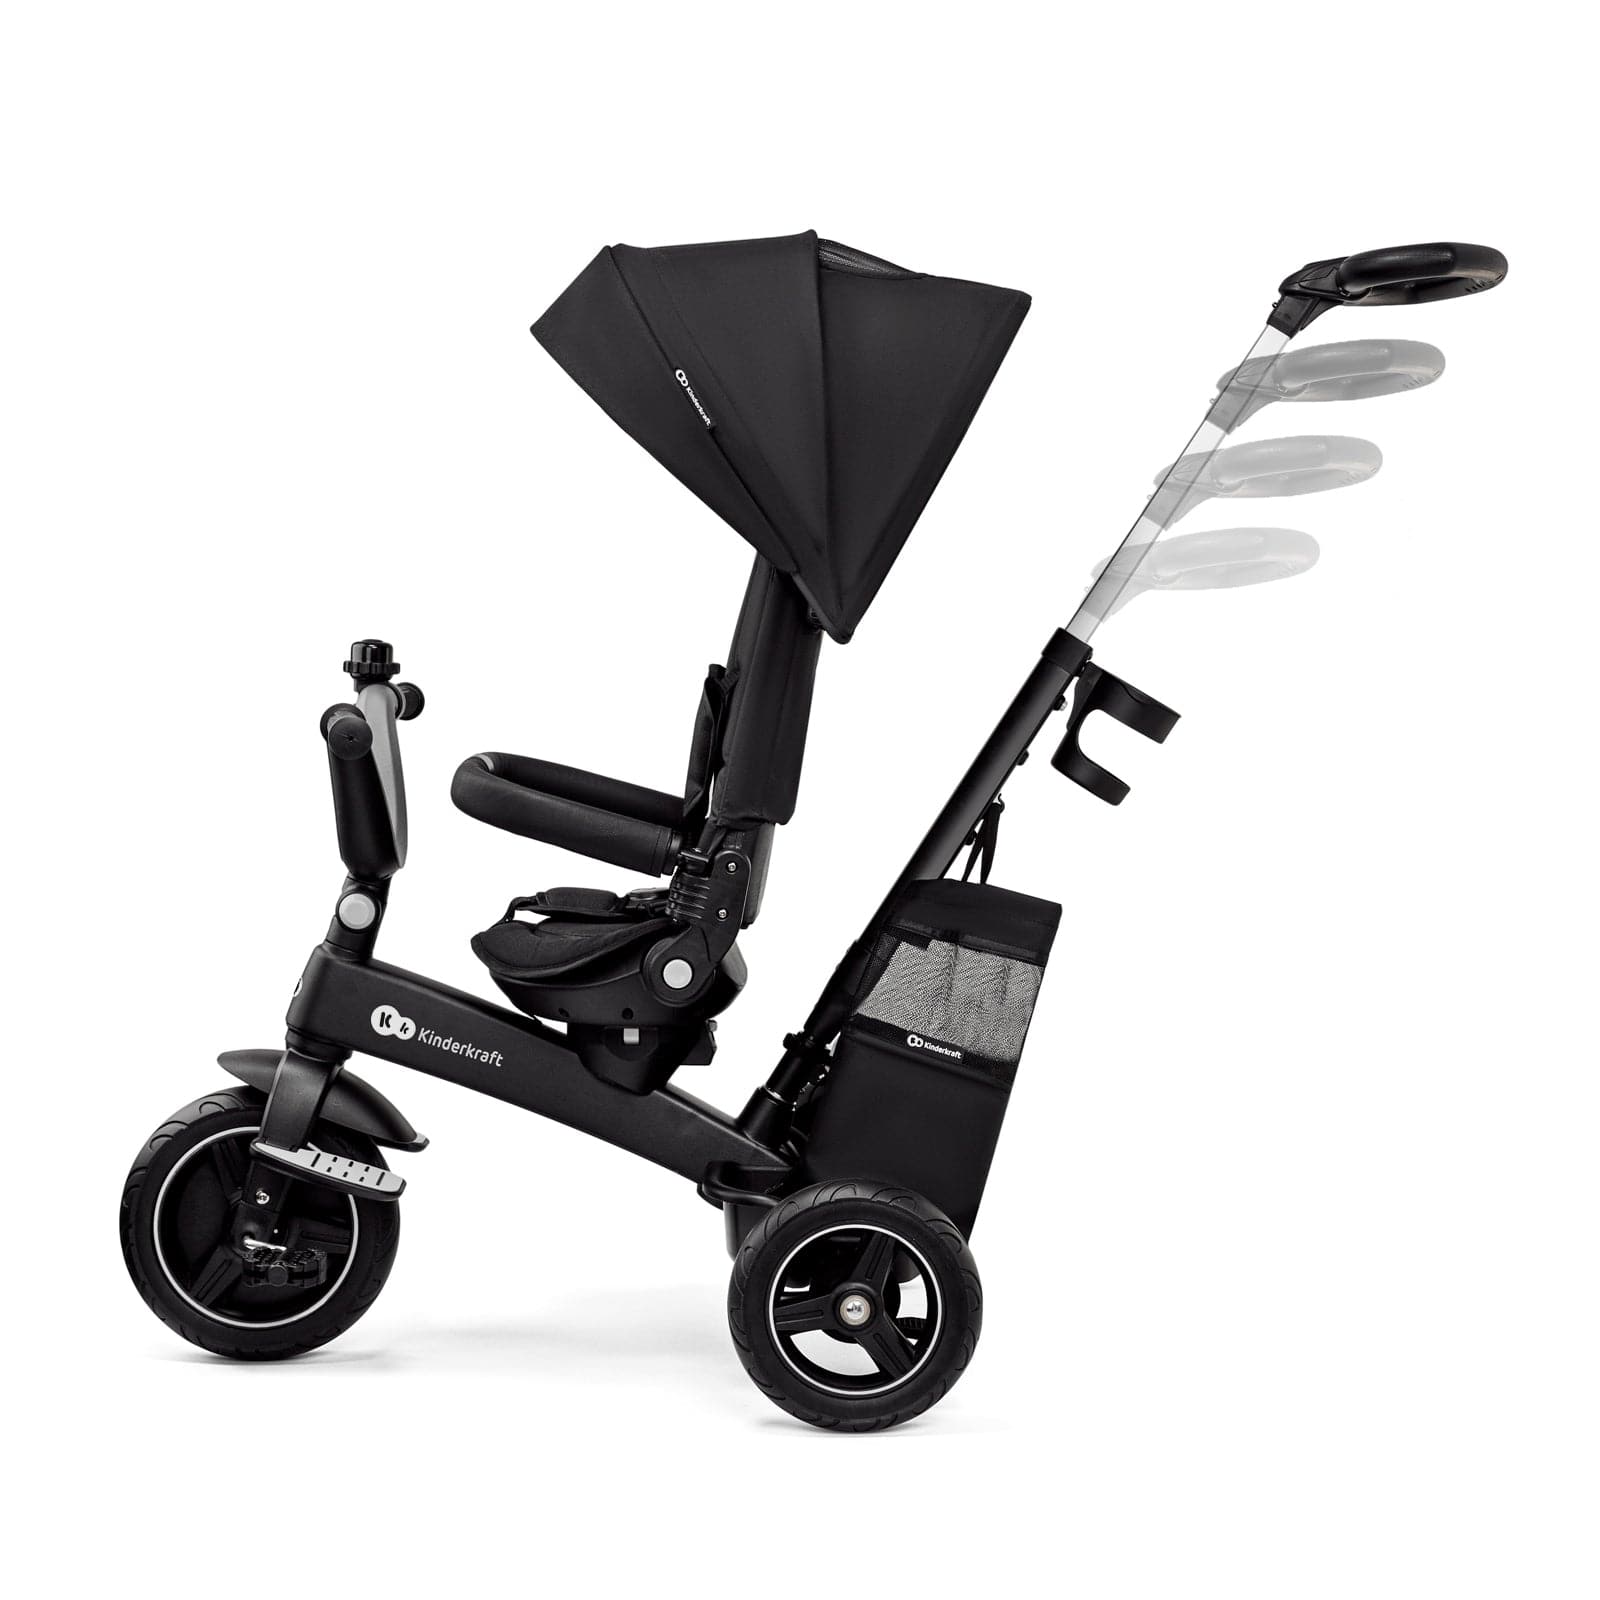 Kinderkraft Easytwist Trike - Black -  | For Your Little One